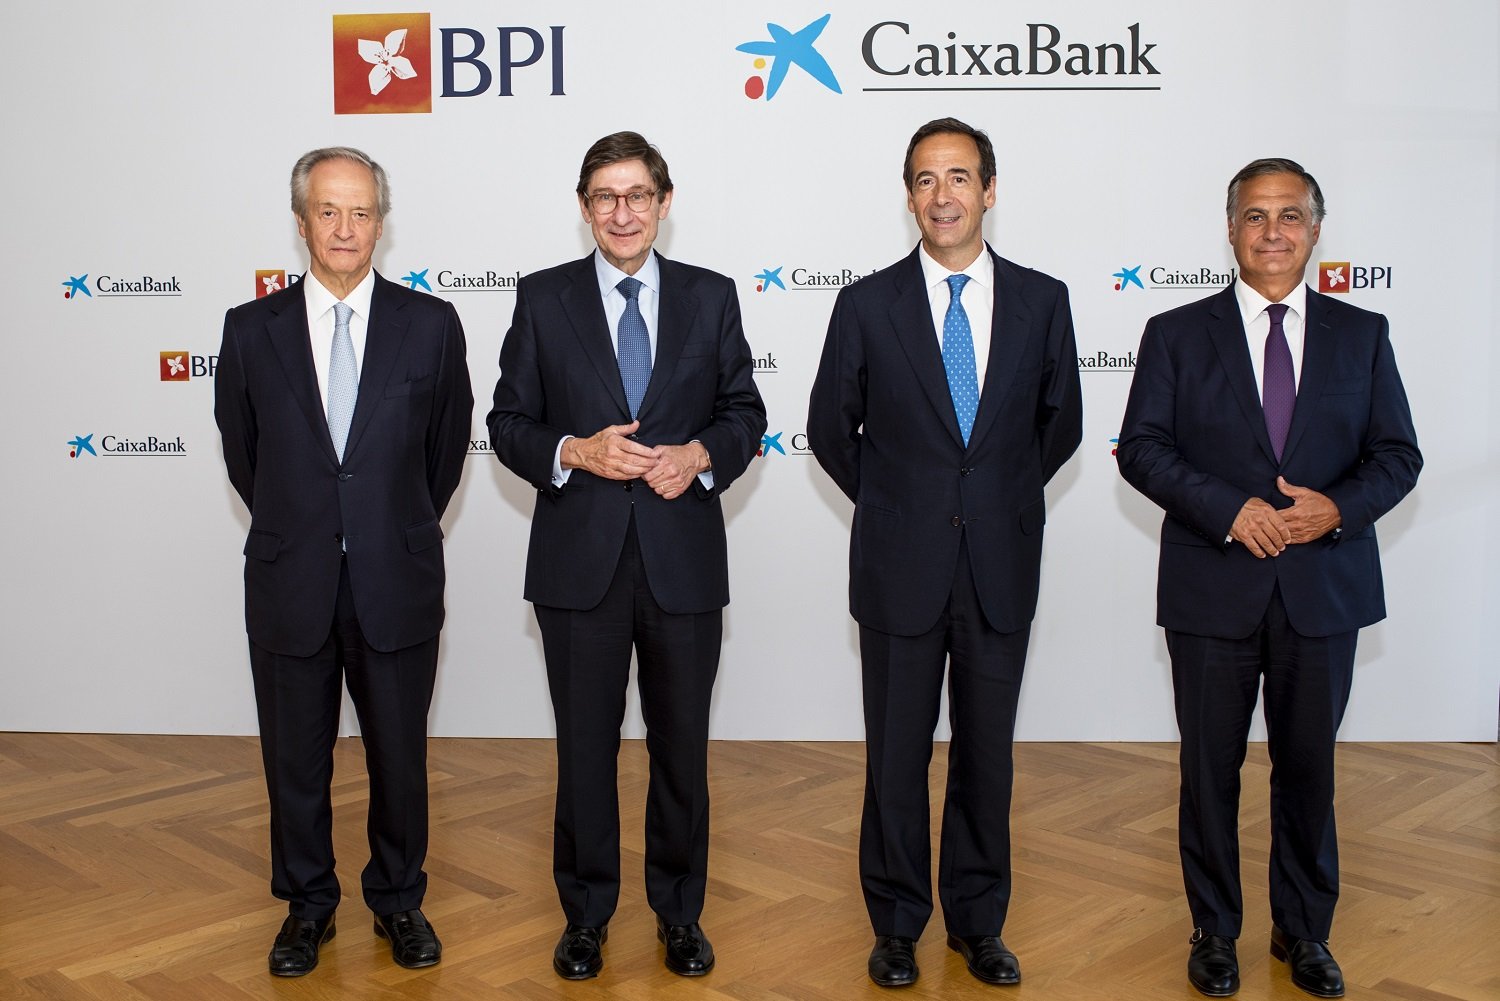 El consejo de CaixaBank se reúne en Lisboa por primera vez desde la fusión con Bankia